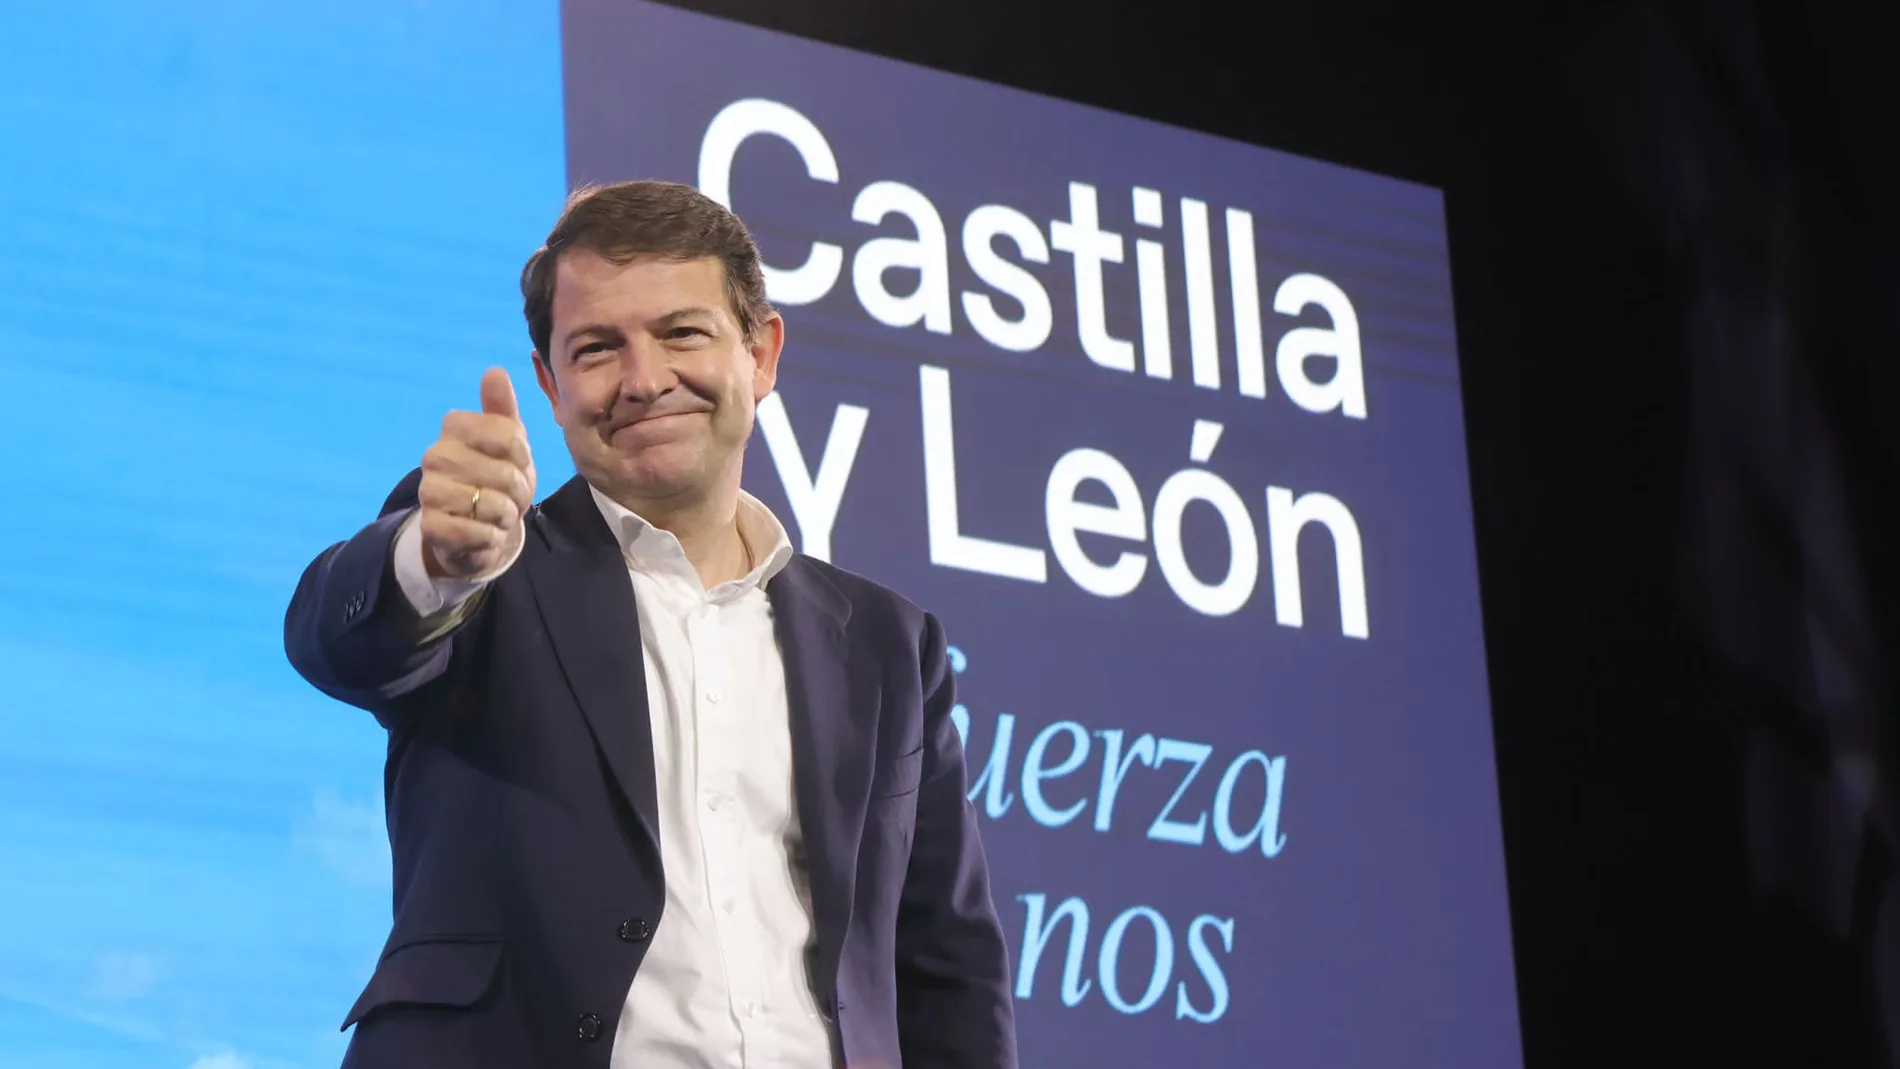 El candidato del PP, Alfonso Fernández Mañueco, cierra la campaña en Valladolid